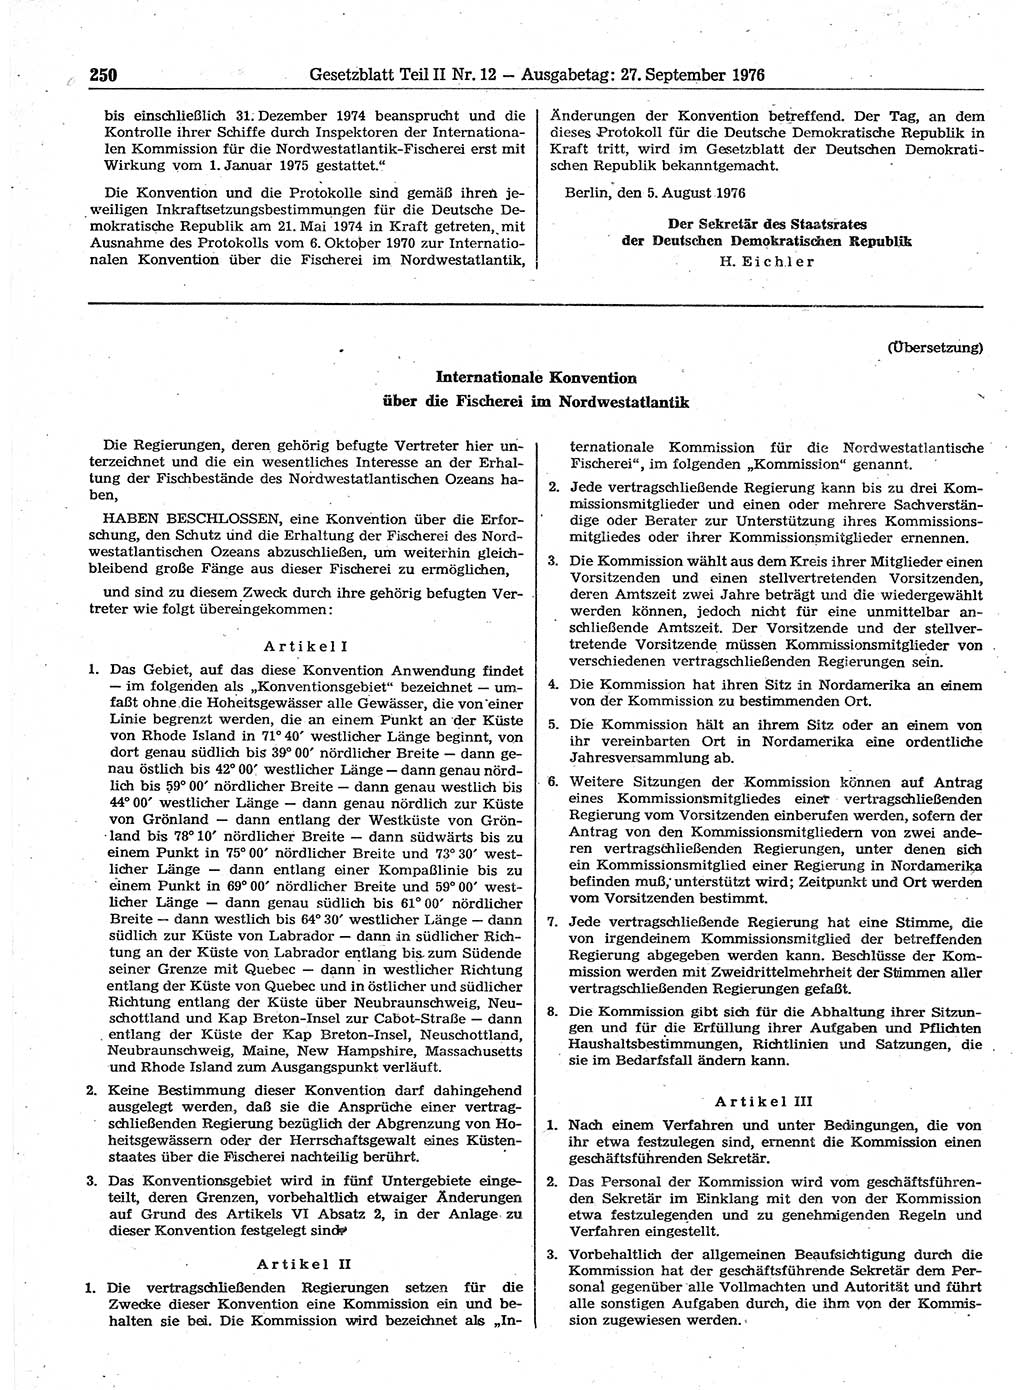 Gesetzblatt (GBl.) der Deutschen Demokratischen Republik (DDR) Teil ⅠⅠ 1976, Seite 250 (GBl. DDR ⅠⅠ 1976, S. 250)